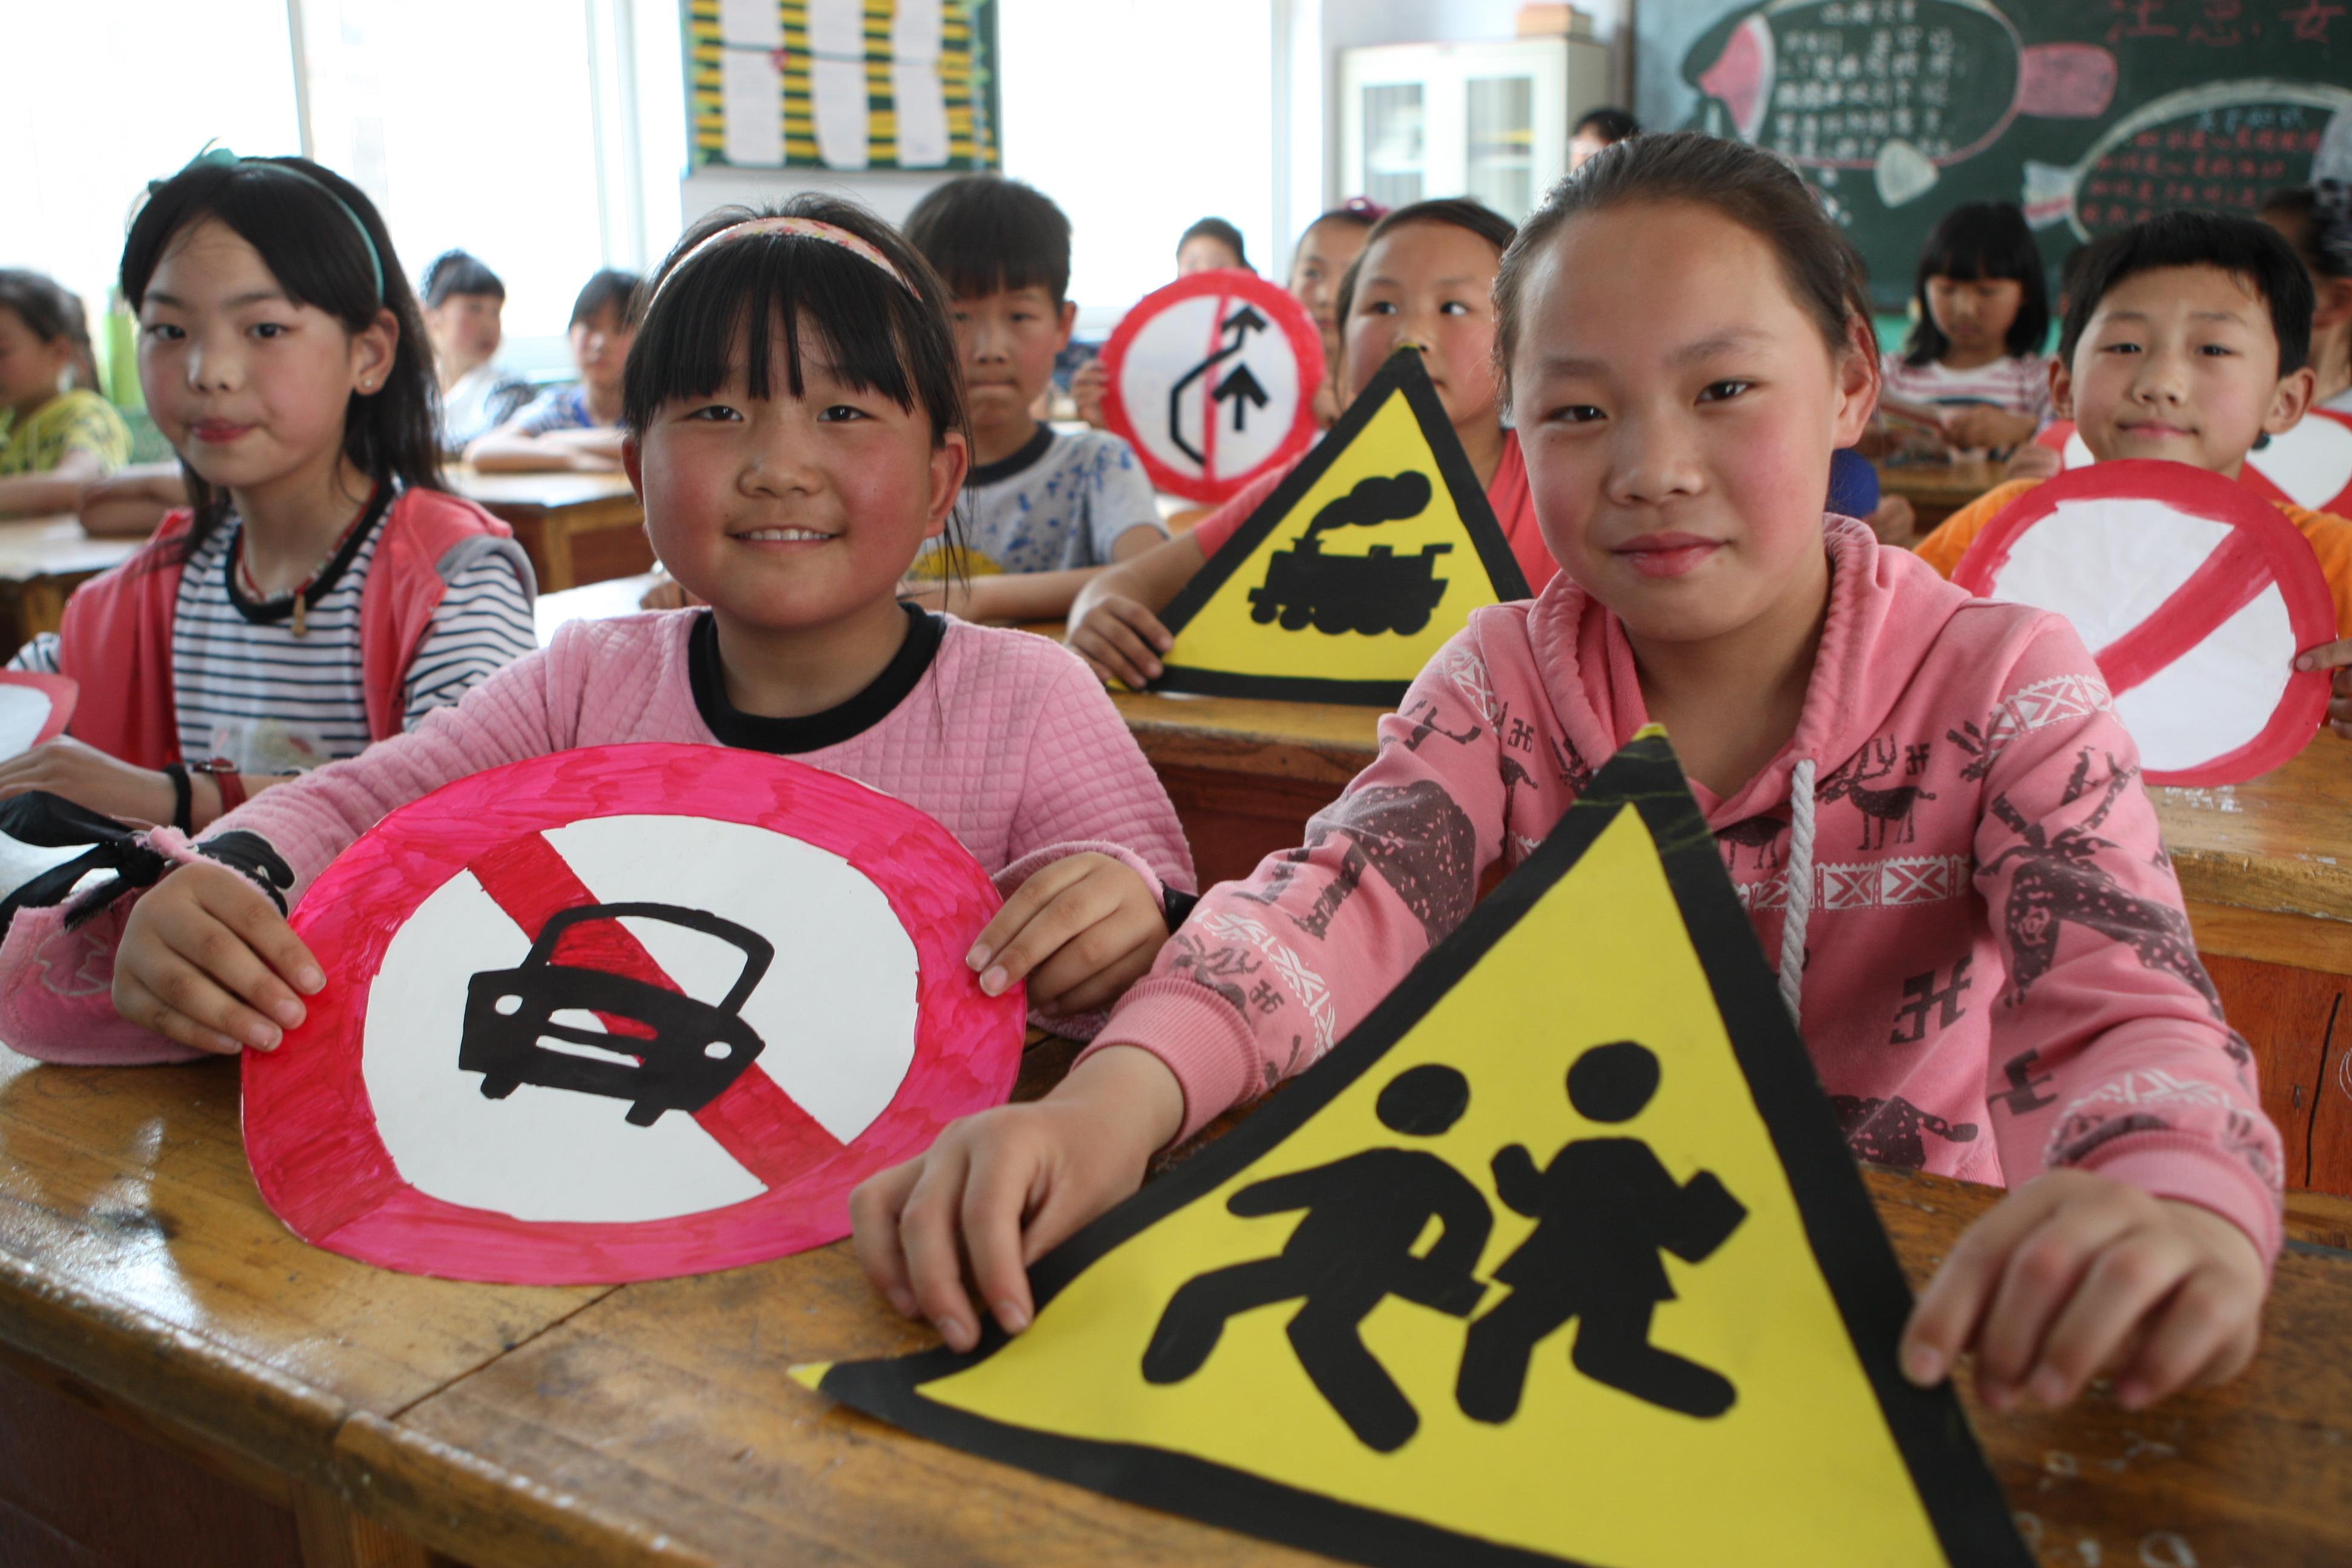 图片新闻:解放区中小学校开展全国交通安全反思日